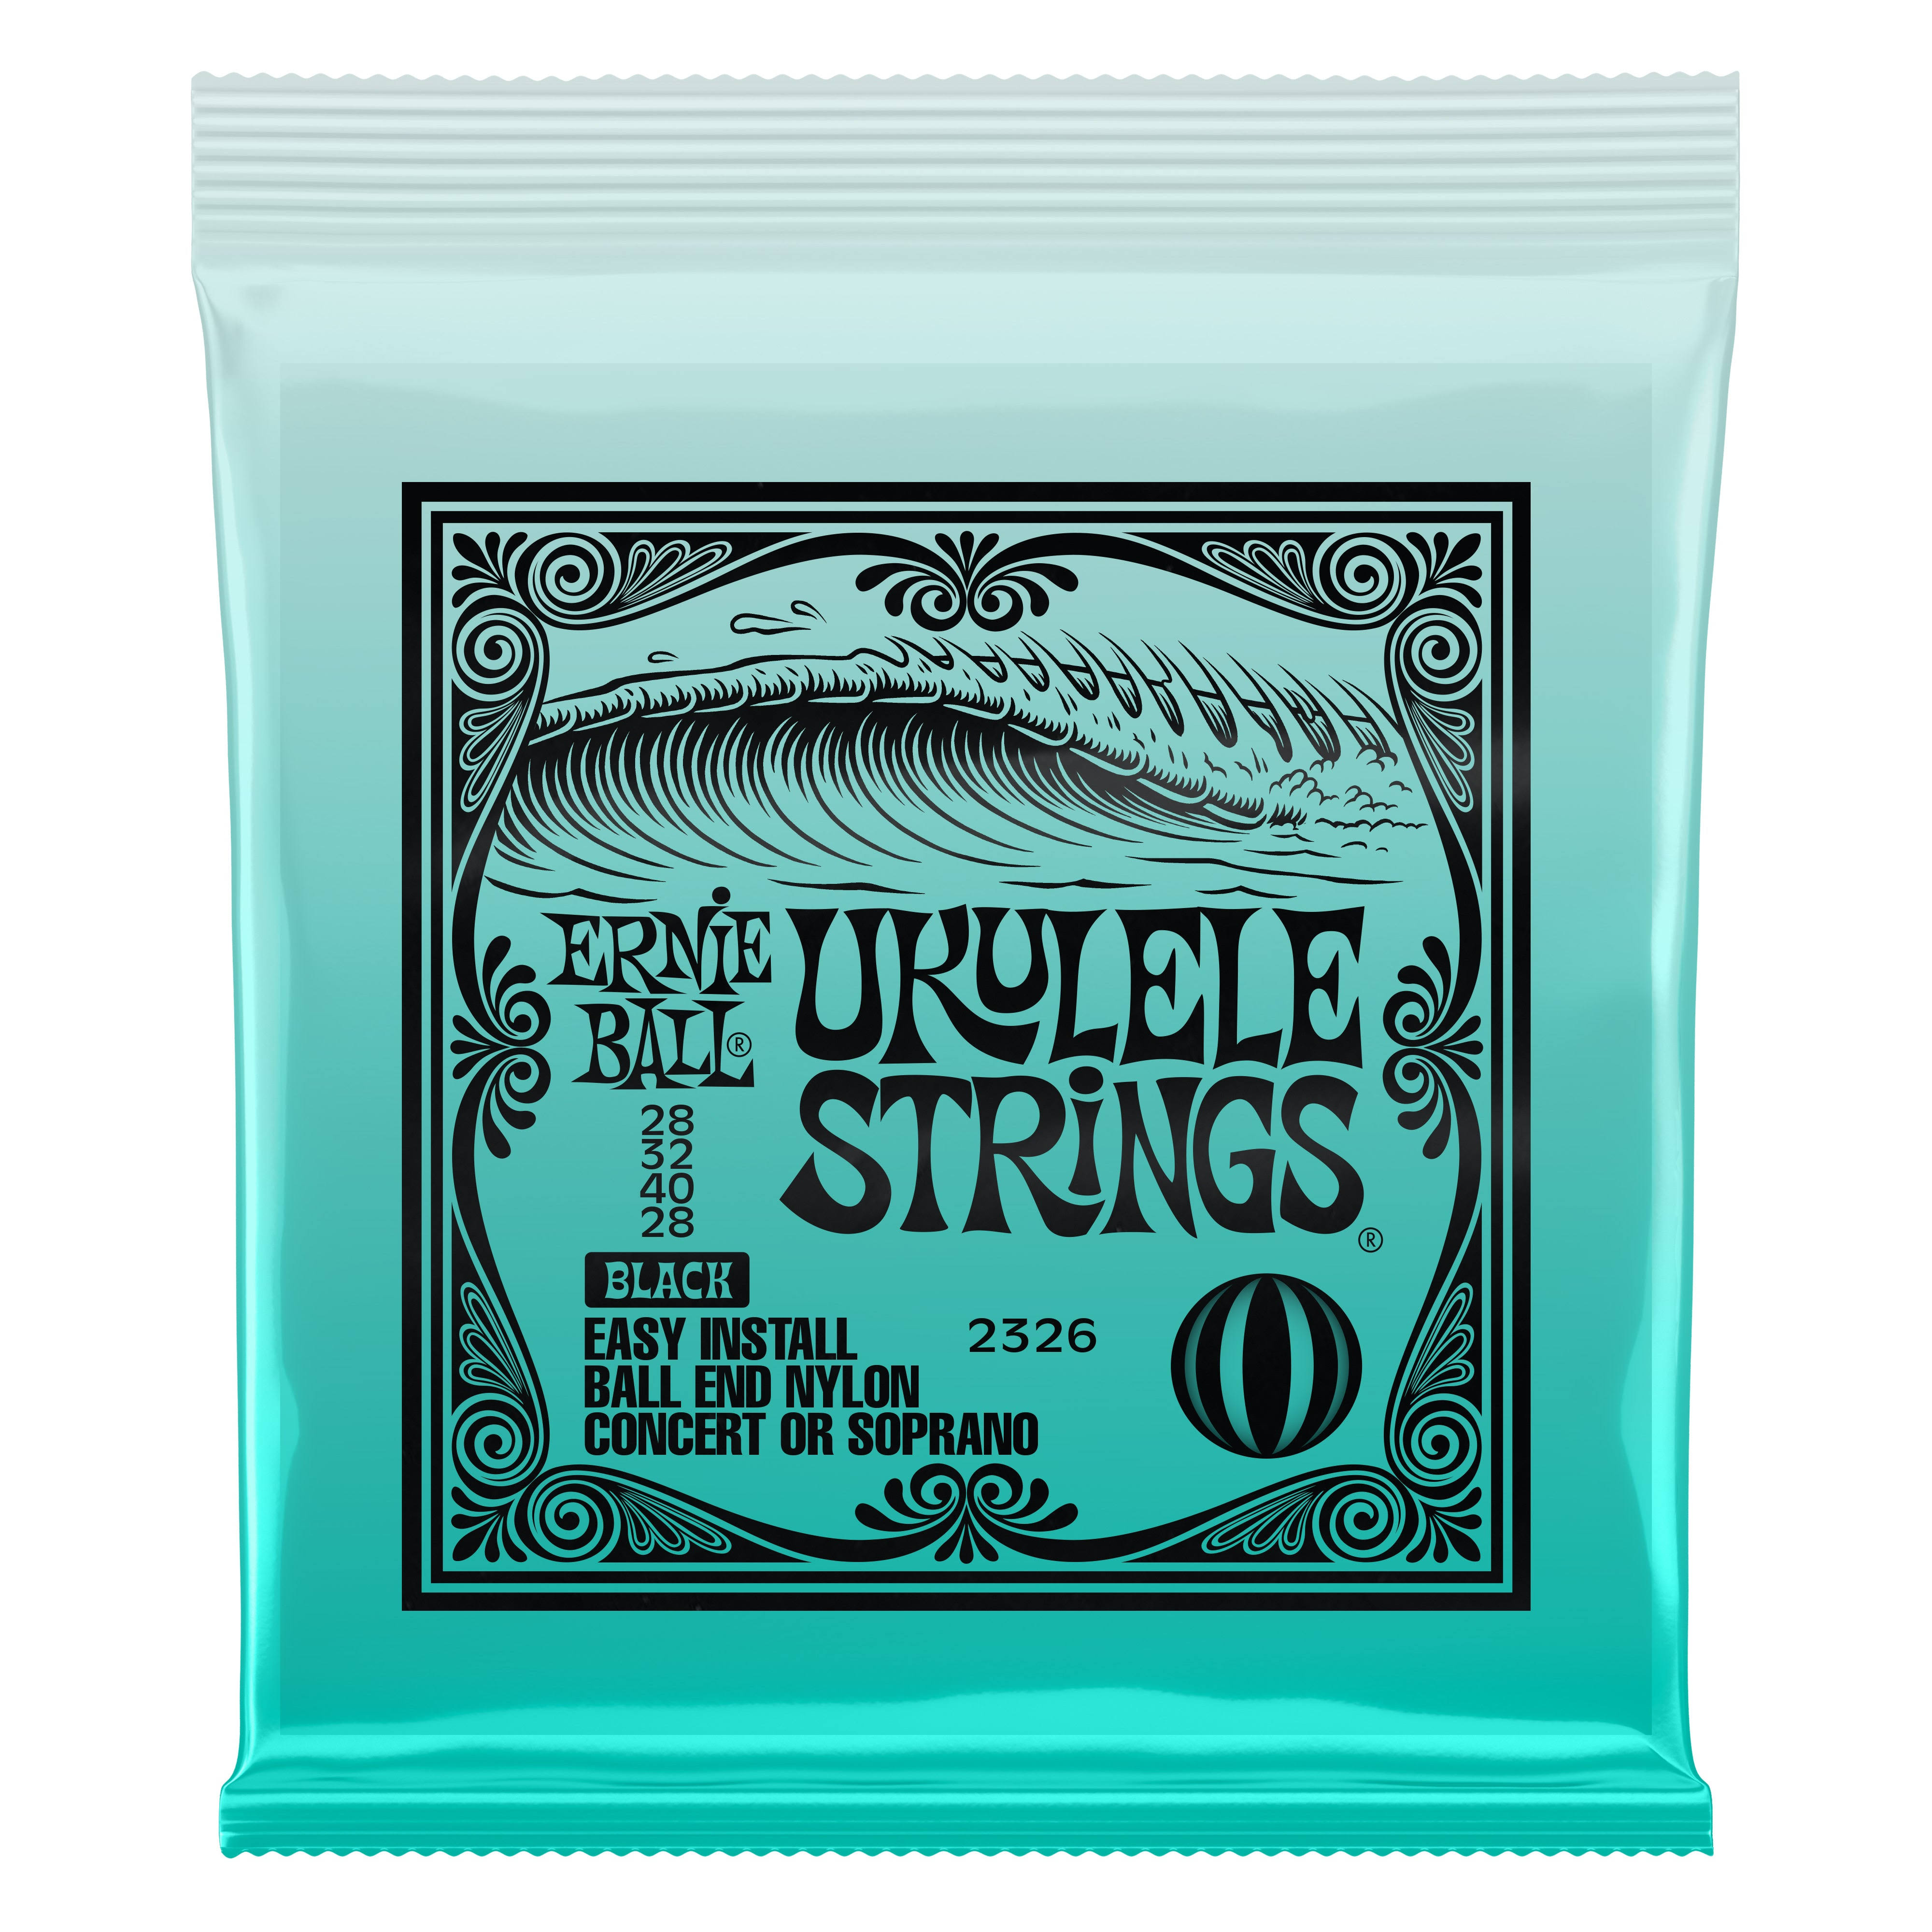 Ernie Ball Ukulele Strings Black Nylon